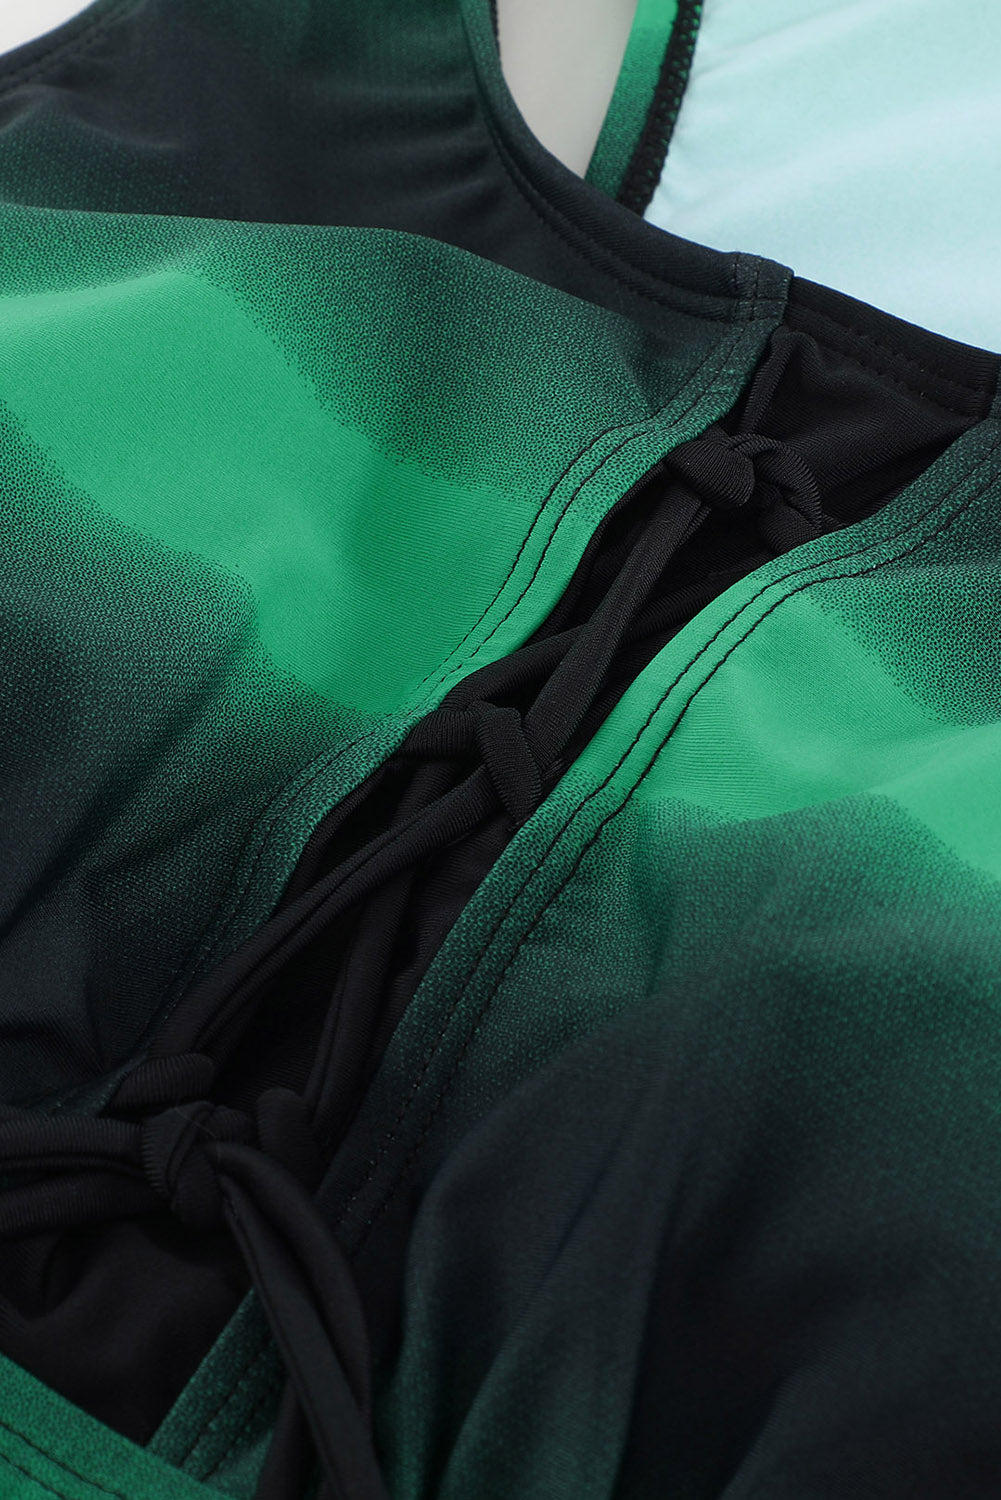 Costume da bagno Tankini con stampa Racerback verde nero ombreggiato